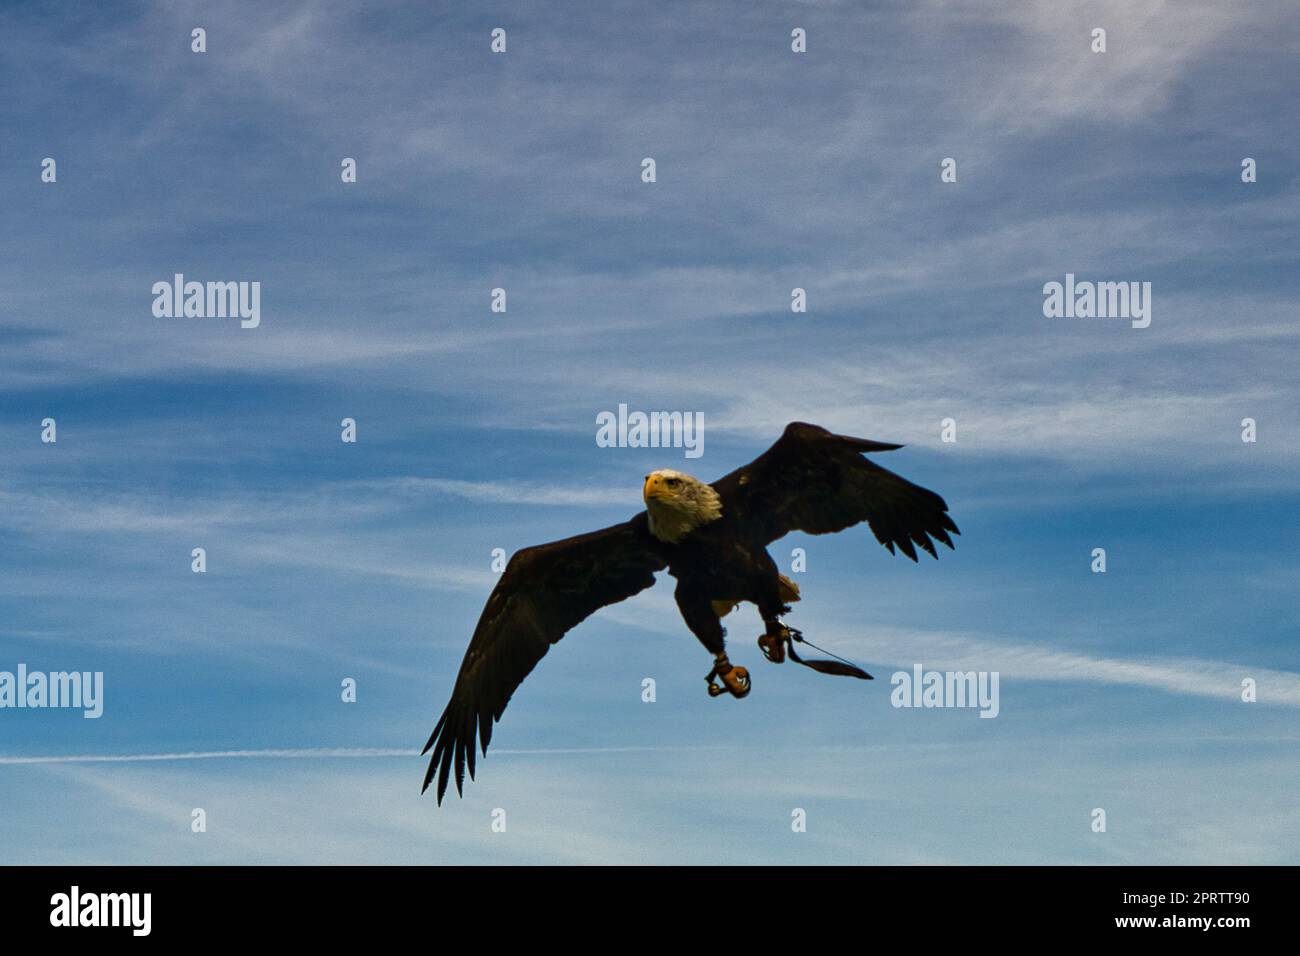 Resumen de plumas fotografías e imágenes de alta resolución - Alamy